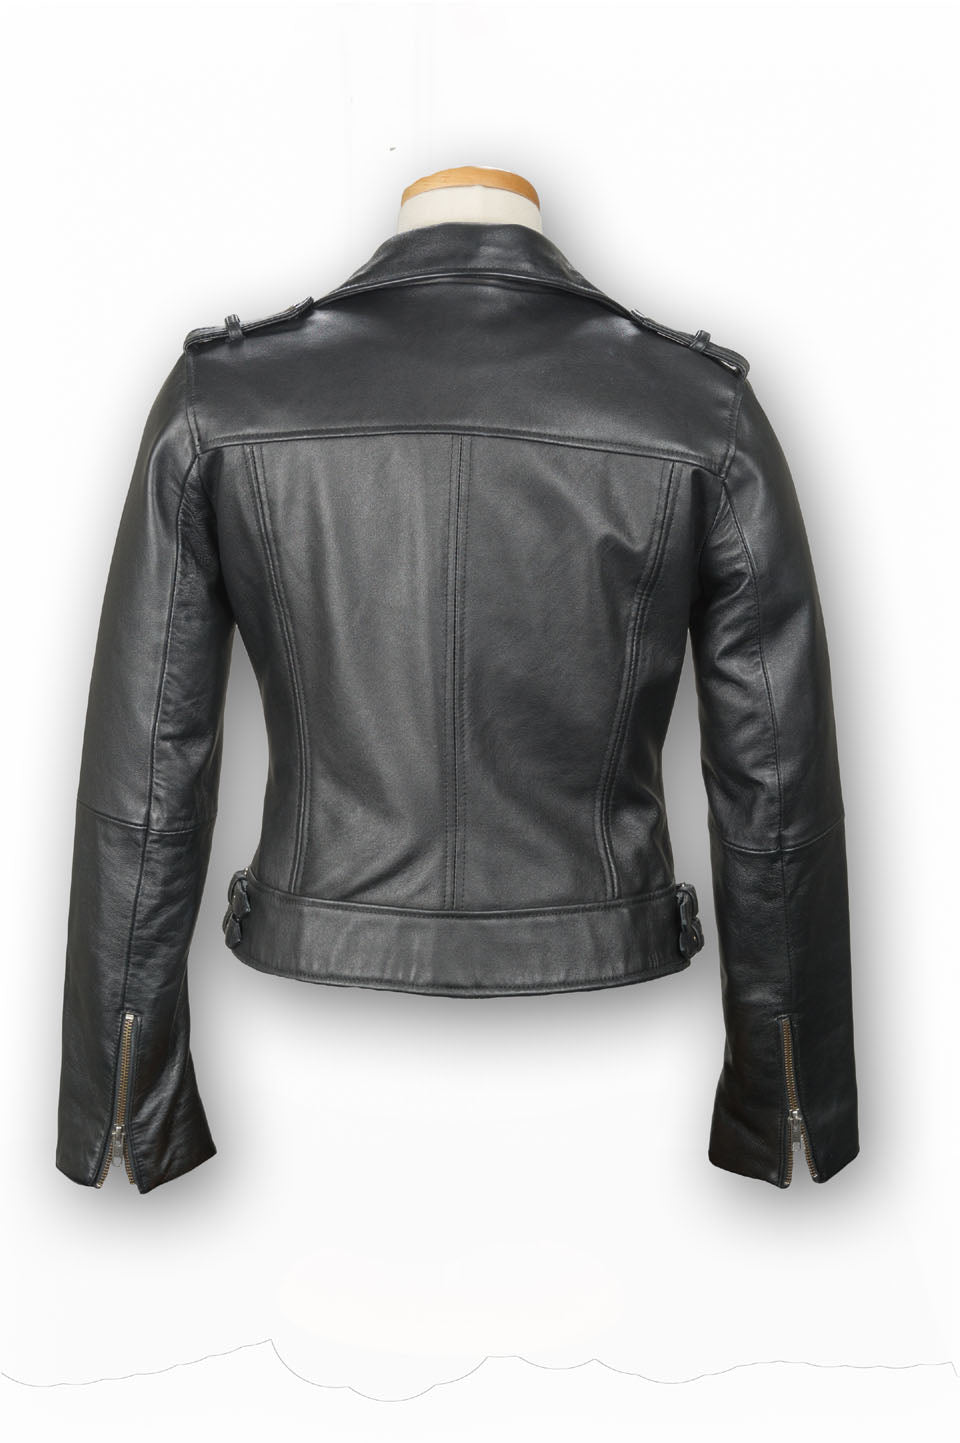 Women’s Black Leather Biker Jacket